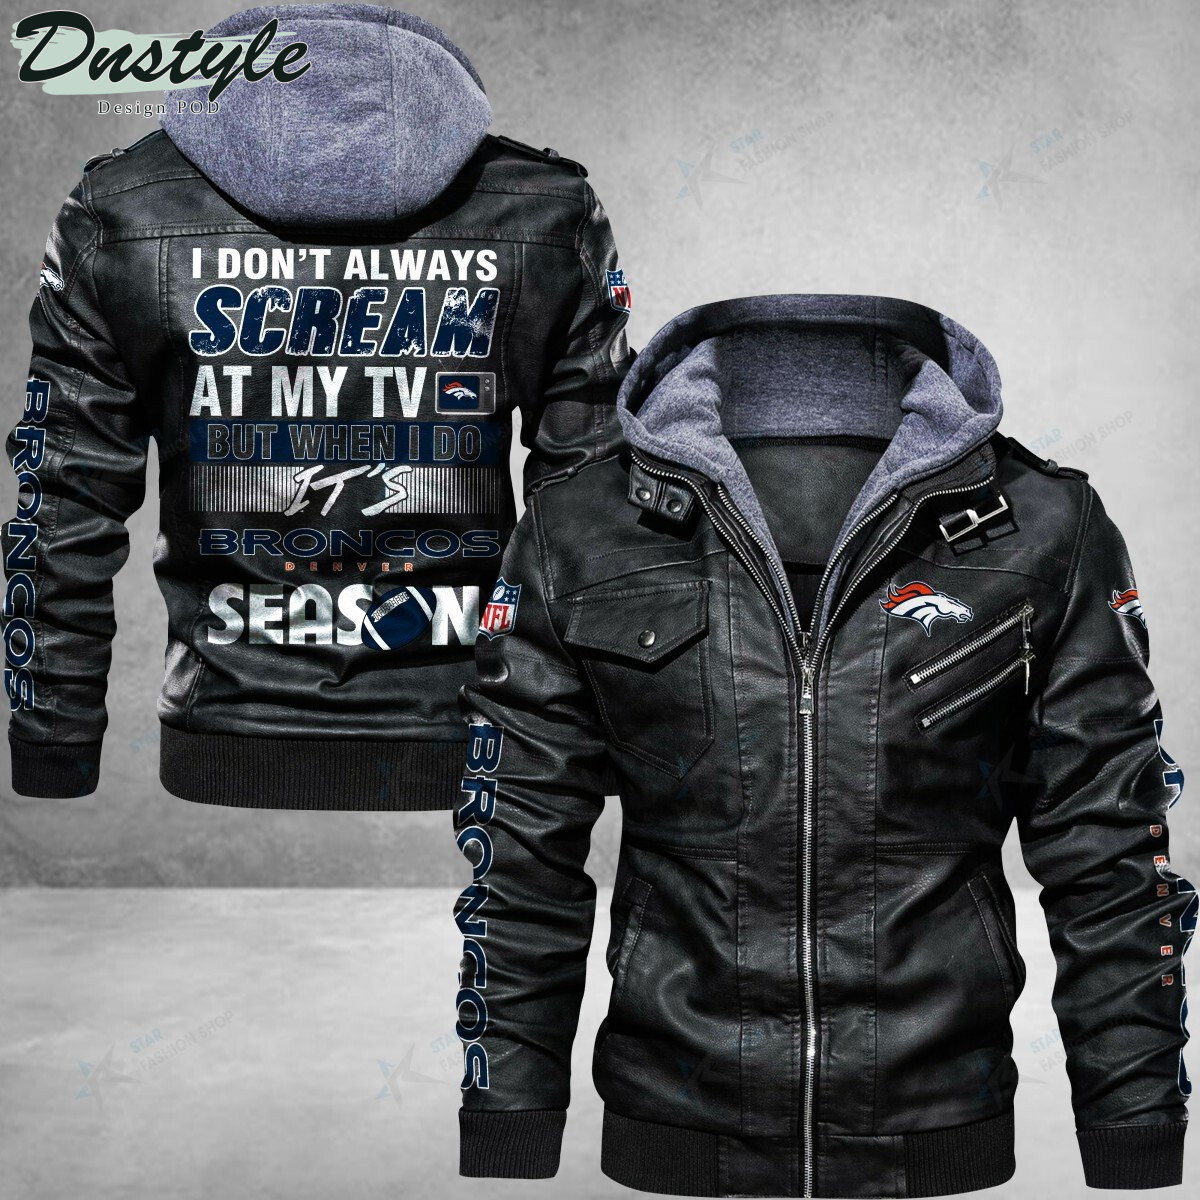 Denver Broncos I don’t Always Scream At My TV Leather Jacket